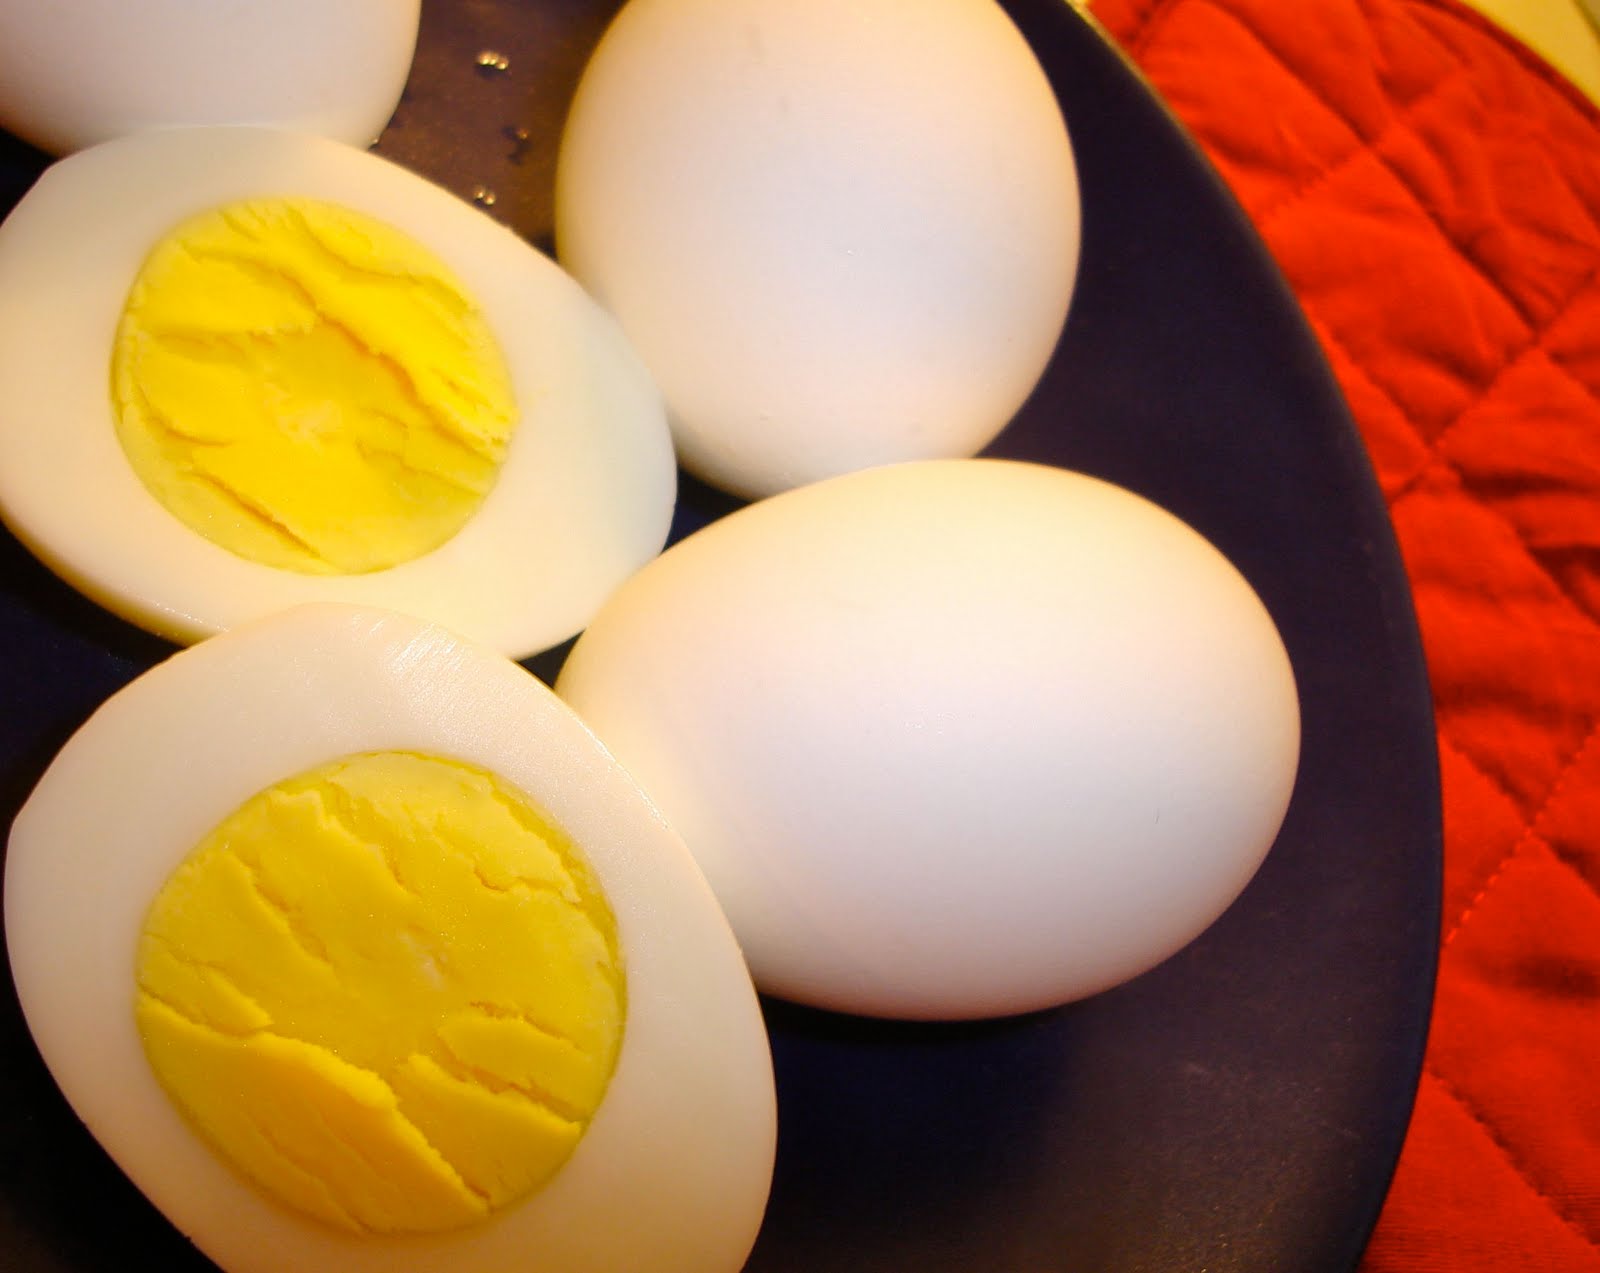 http://www.thetruecare.com/wp-content/uploads/2013/12/hard-boiled-eggs.jpg